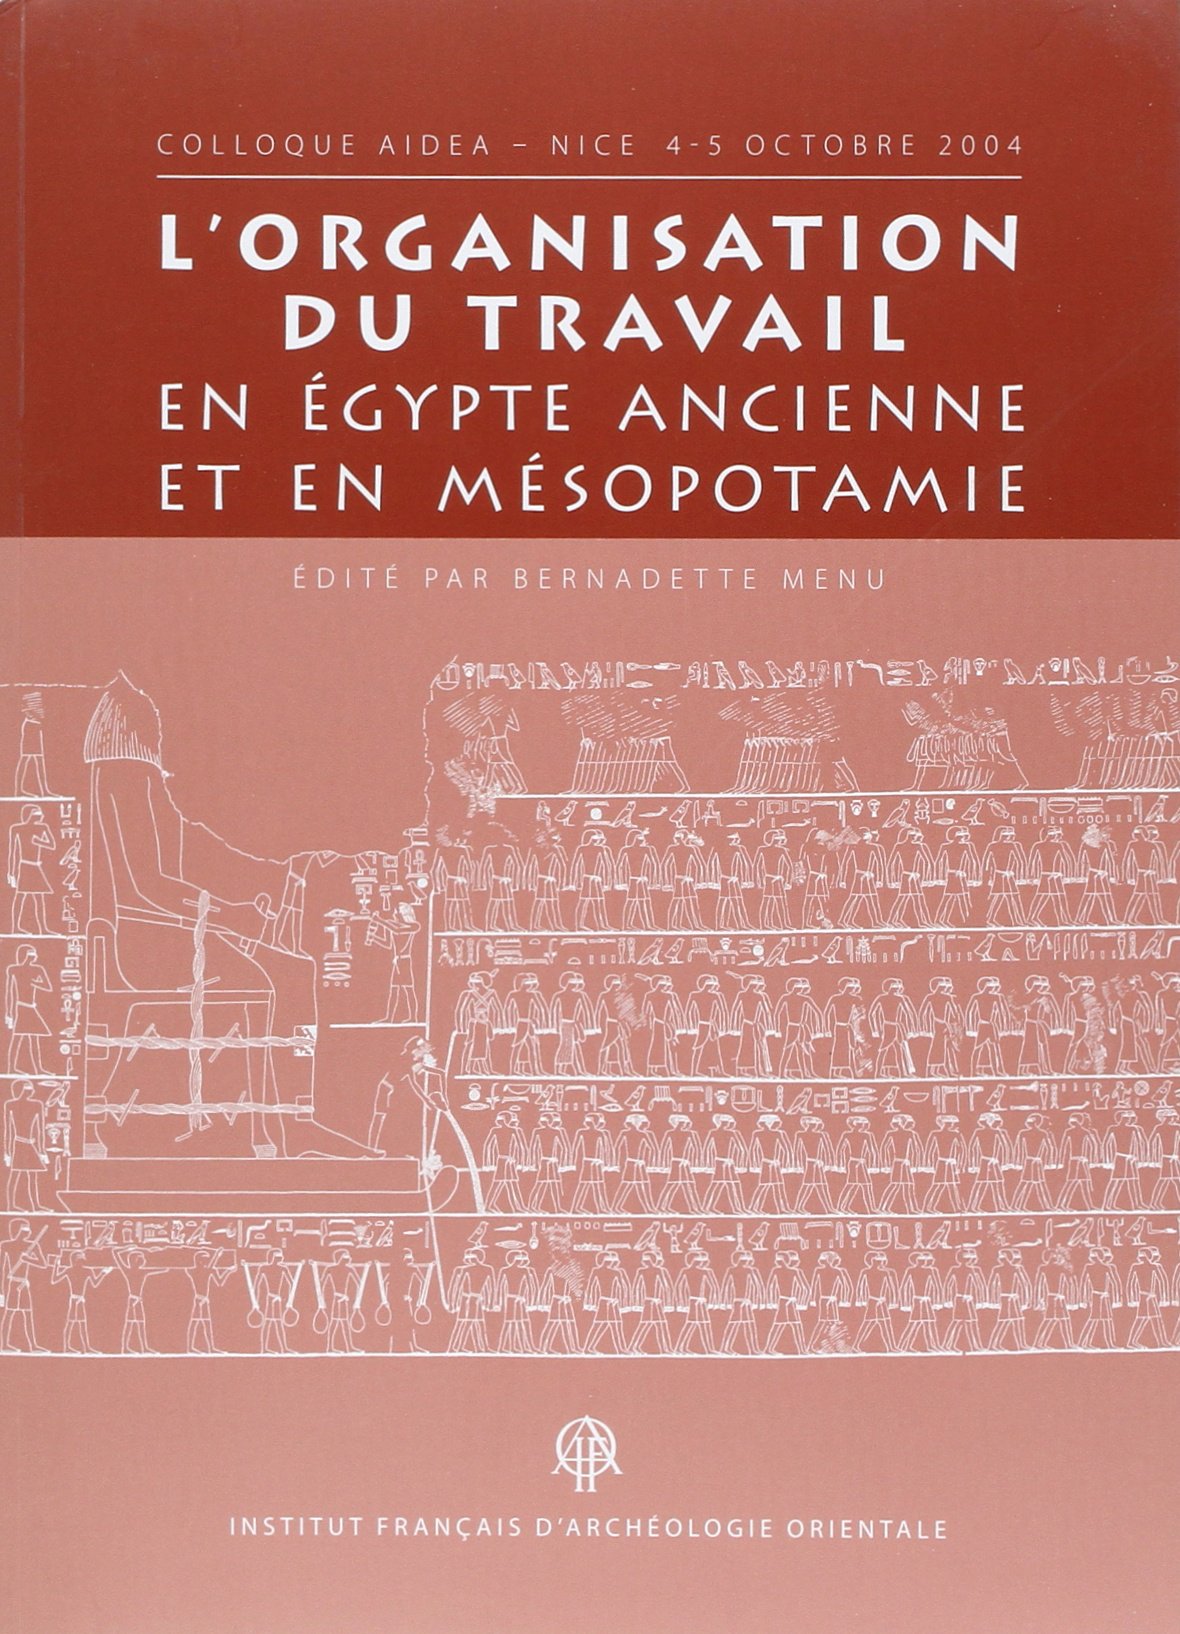 RUPTURE DE STOCK- L'organisation du travail en Égypte ancienne et en Mésopotamie, (actes coll. AIDEA, Nice, oct. 2004), 2010, 200 p.